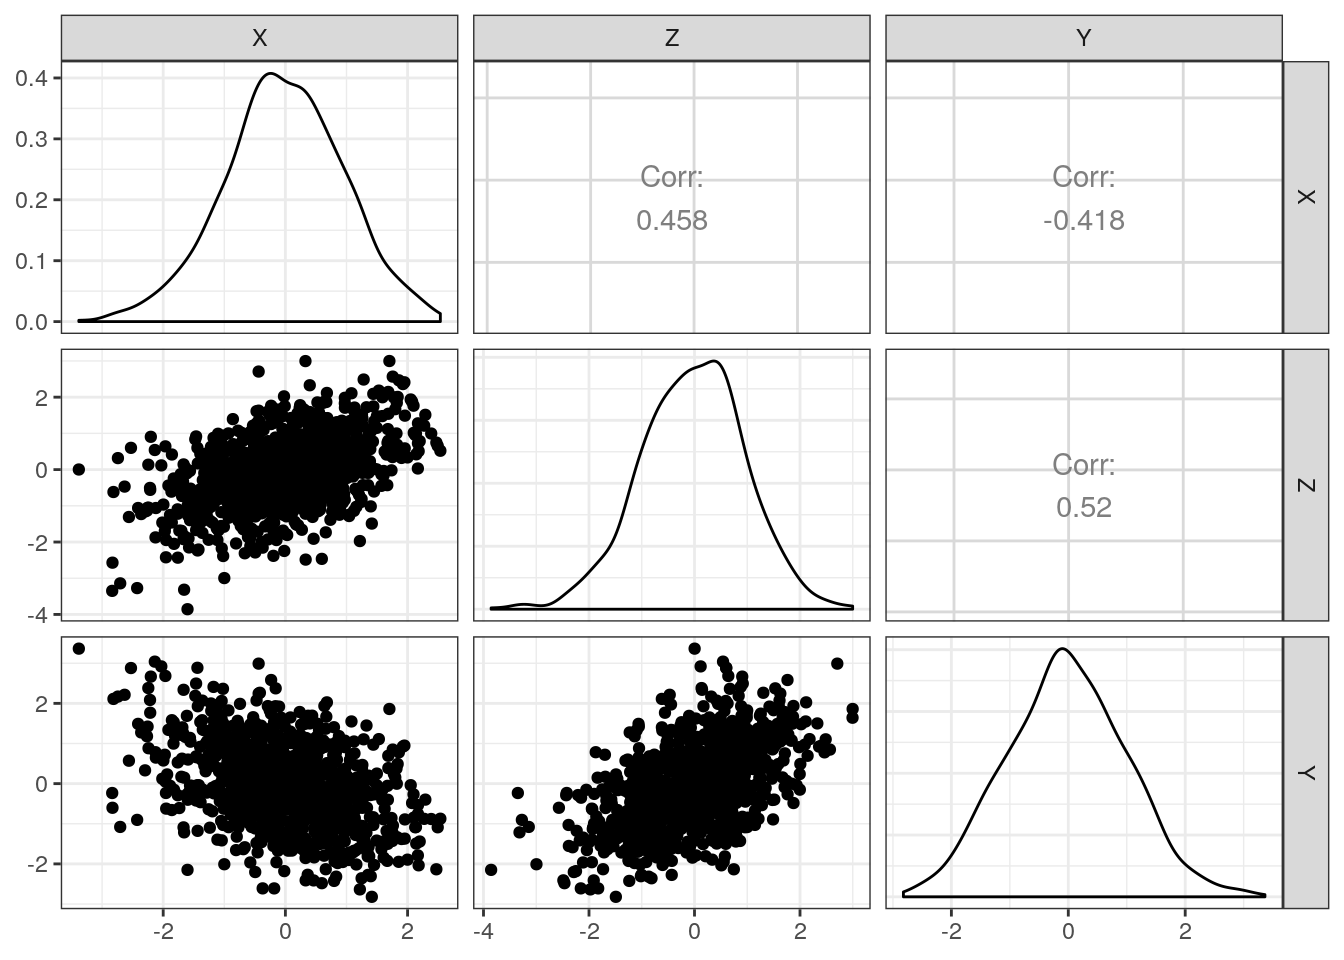 Eksempel, hvor $\rho_{XZ}$ og $\rho_{YZ}$ begge er positivt korrelerede med korrelationer på henholdsvis 0.46 og 0.52. Alligevel bliver korrelationen mellem $X$ or $Y$ til $\rho_{XY}=-0.42$, der indikerer en negativ sammenhæng.